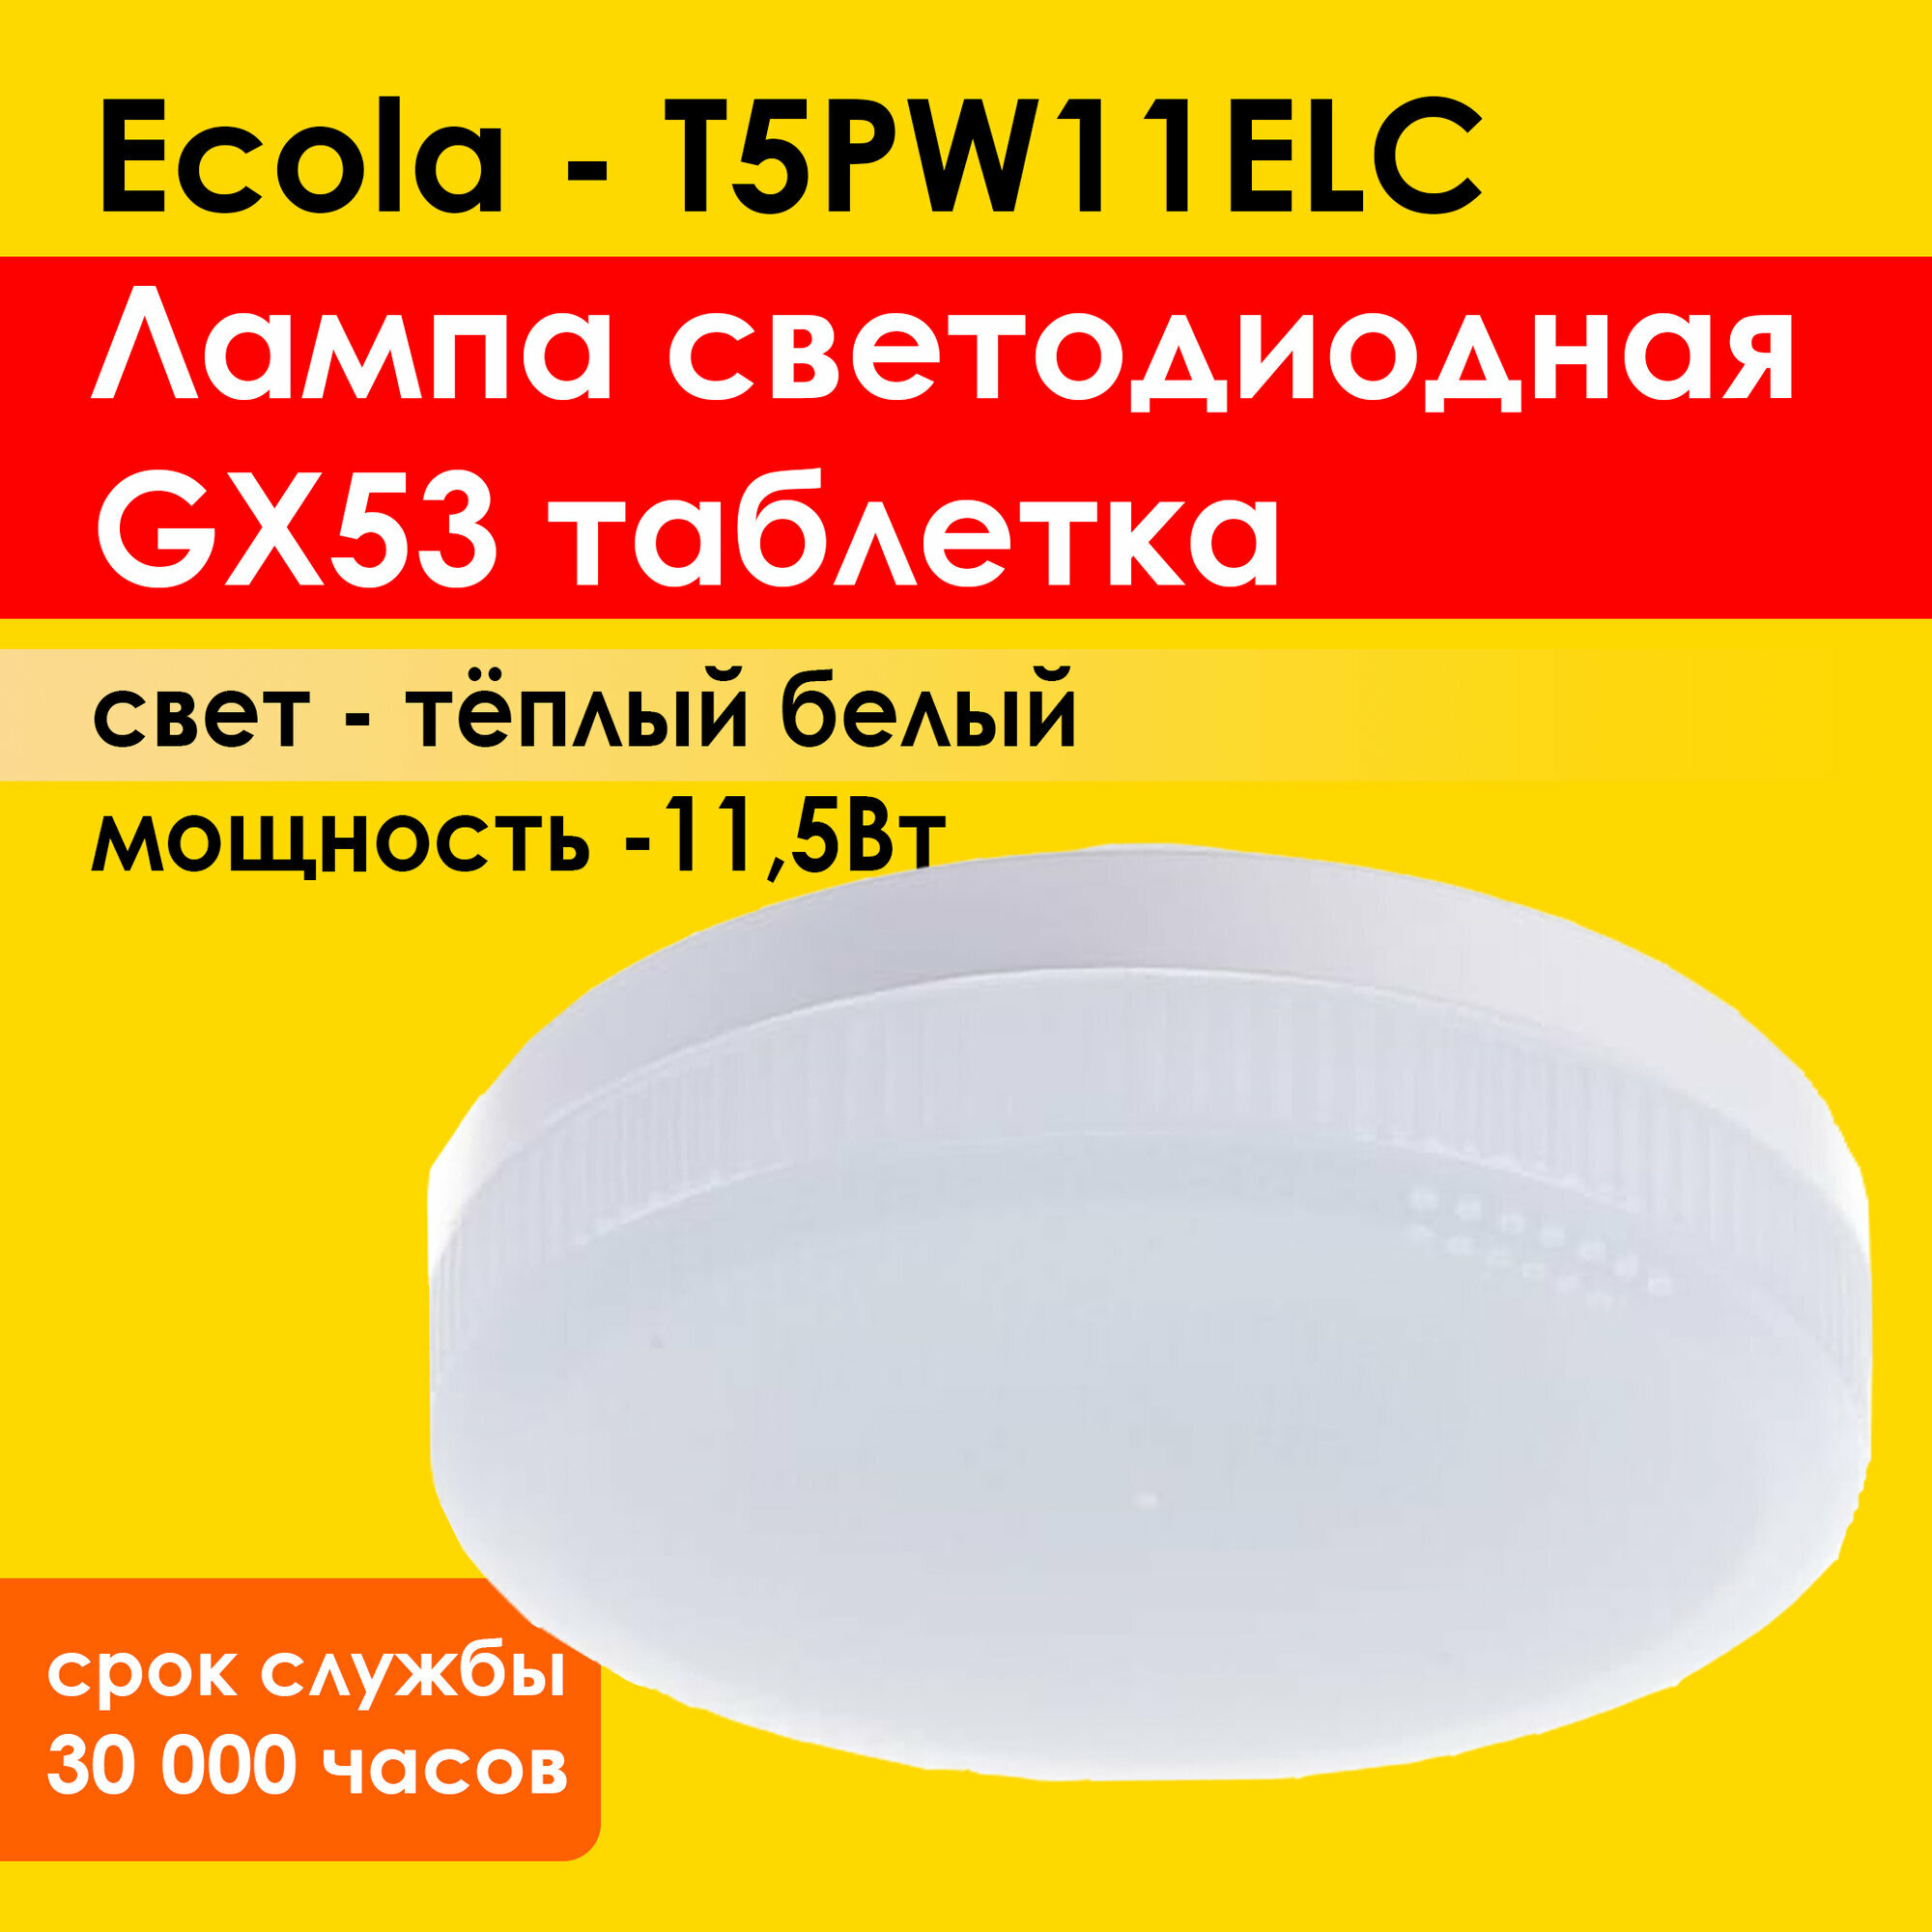 Лампа потолочная светодиодная Ecola Light GX53 (таблетка) 11.5W, 2800К - теплый белый свет (T5PW11ELC)